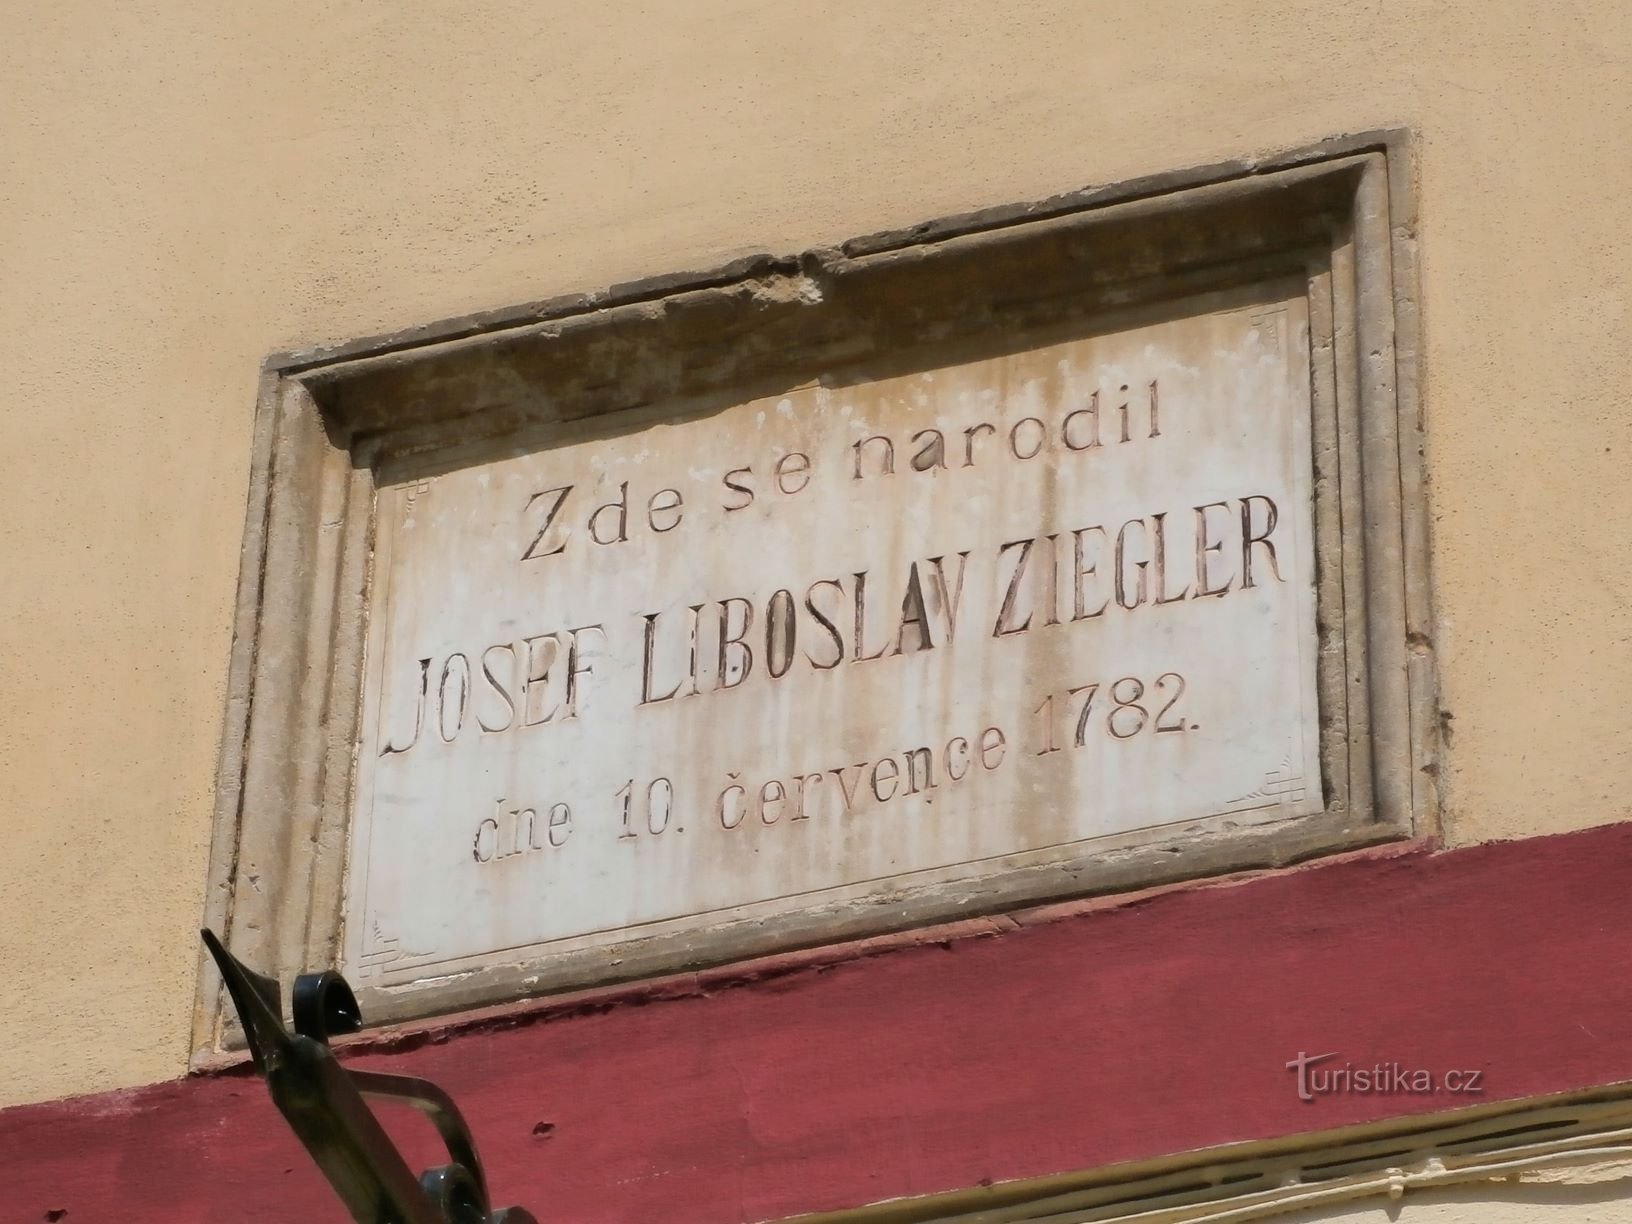 Tấm bảng tưởng niệm JL Ziegler (Hradec Králové, 17.7.2013)